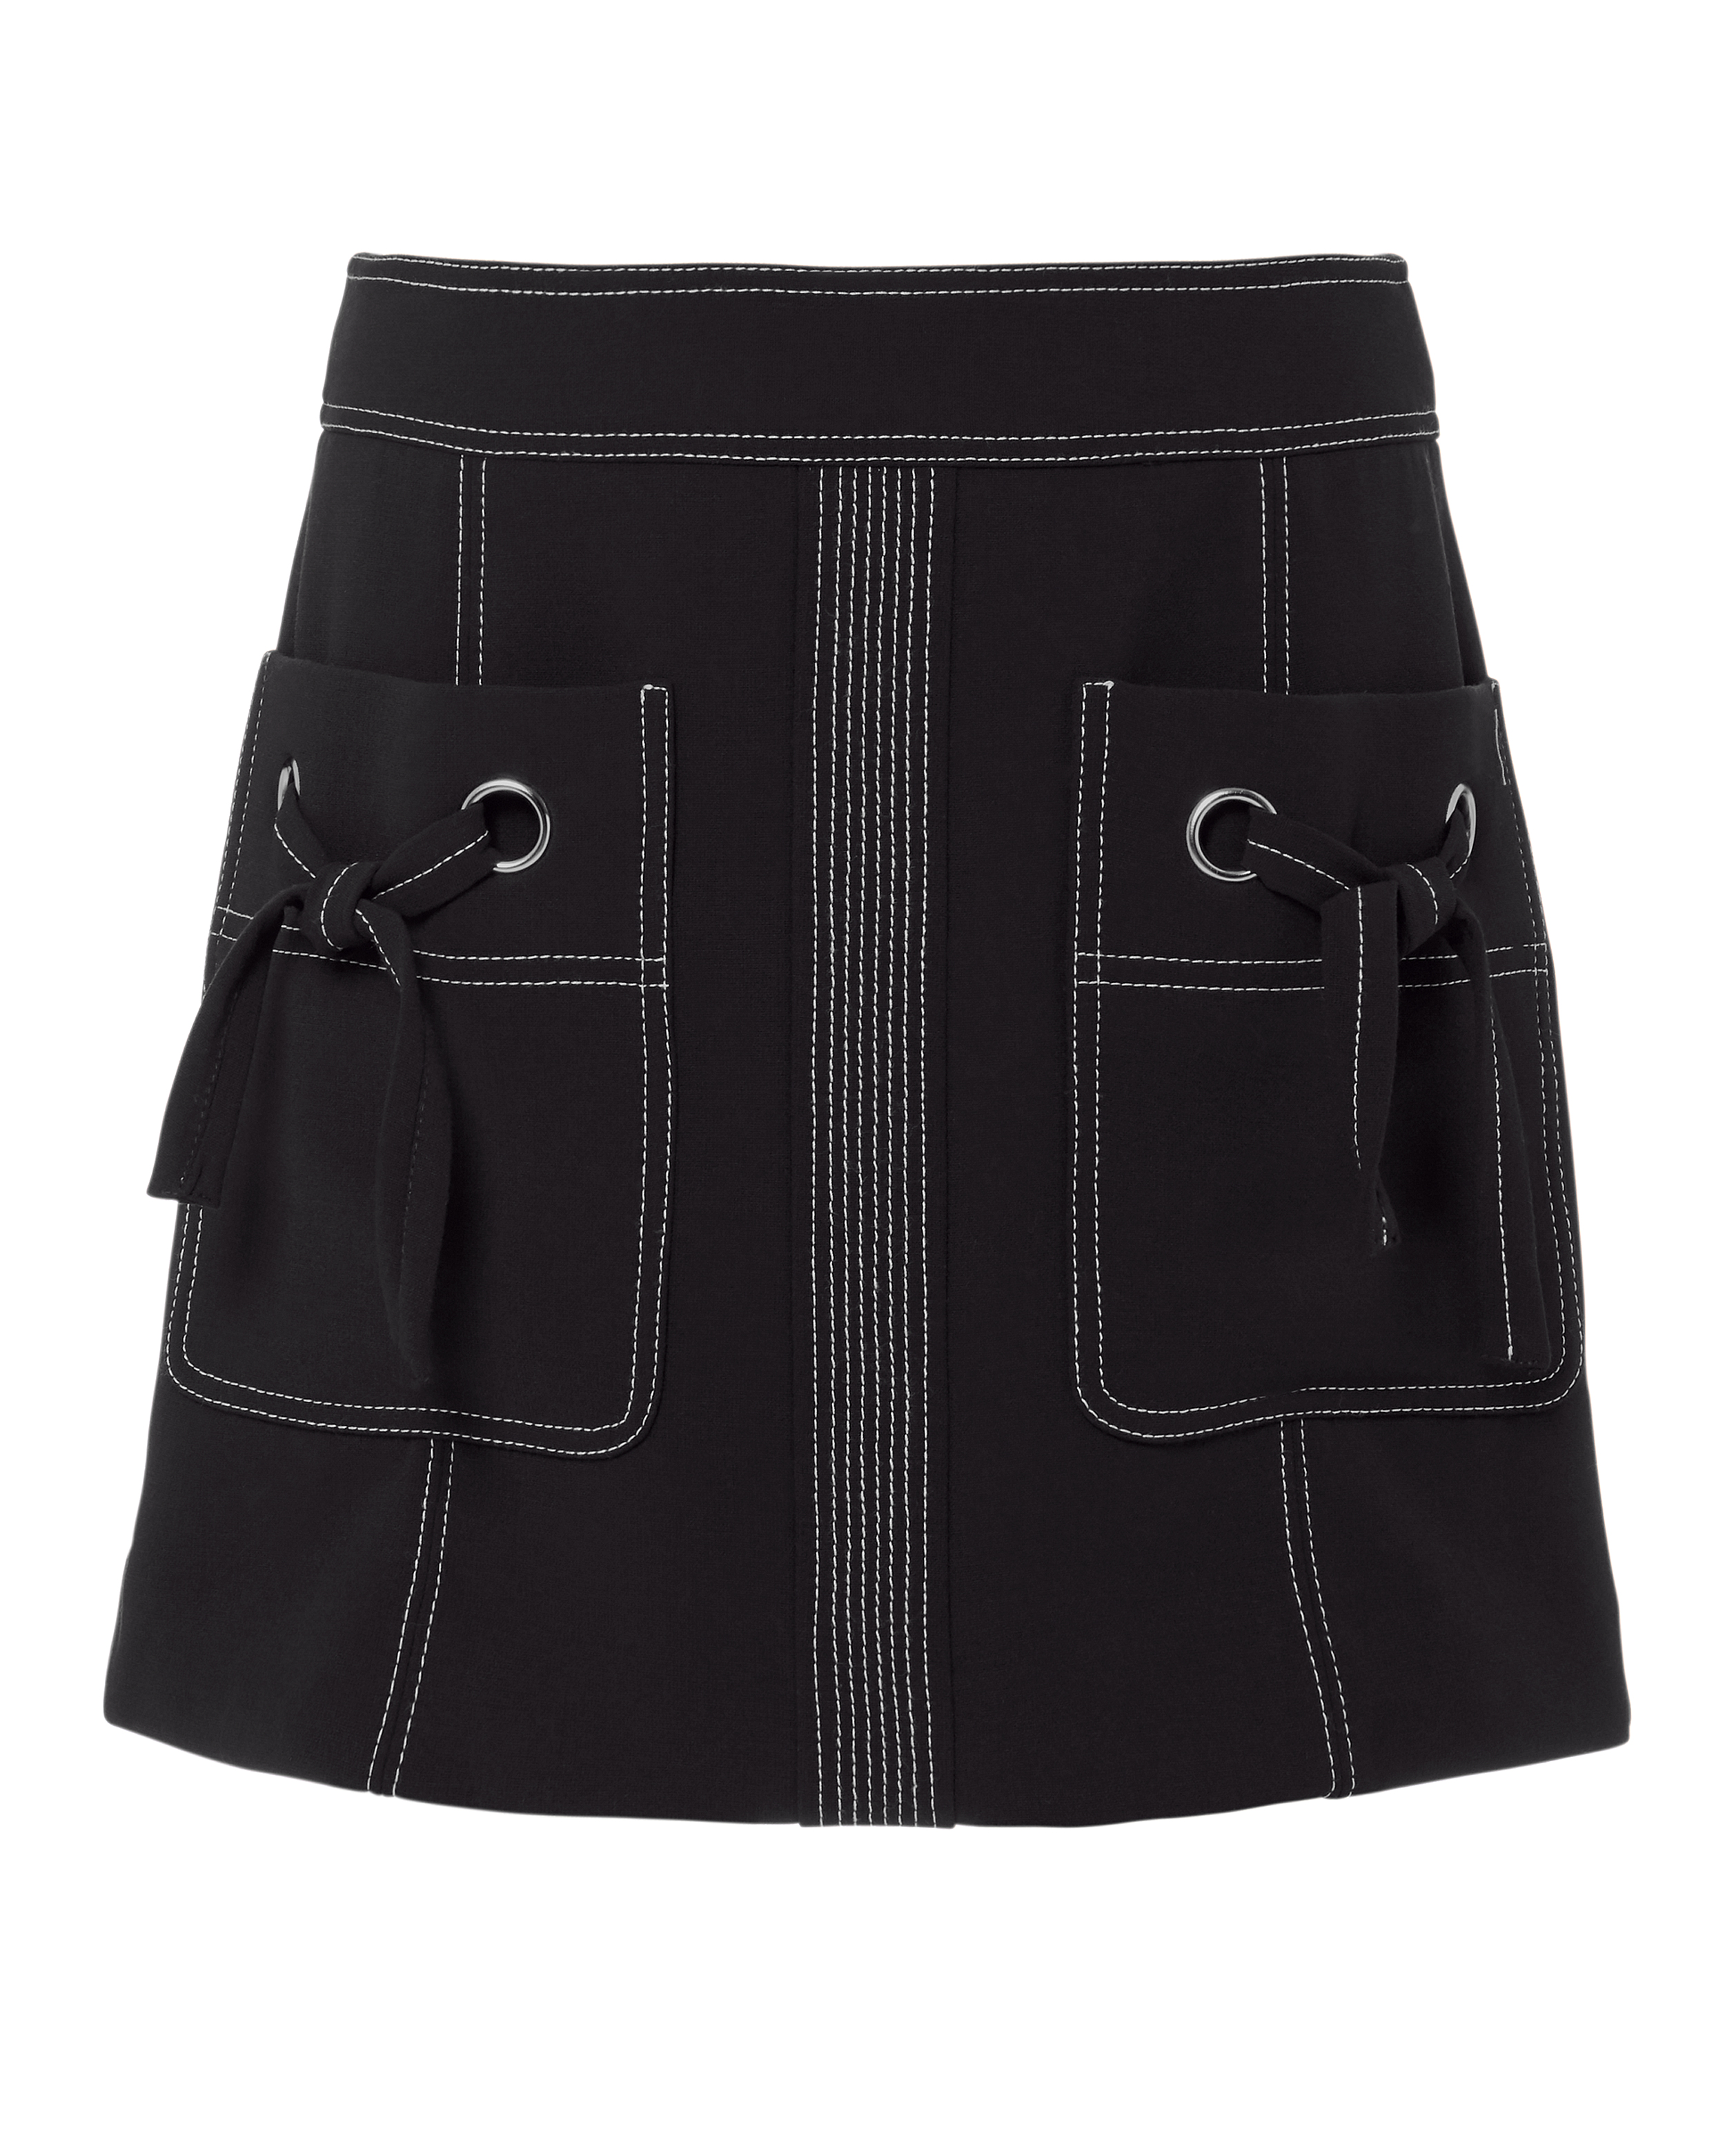 Rinko Mini Skirt